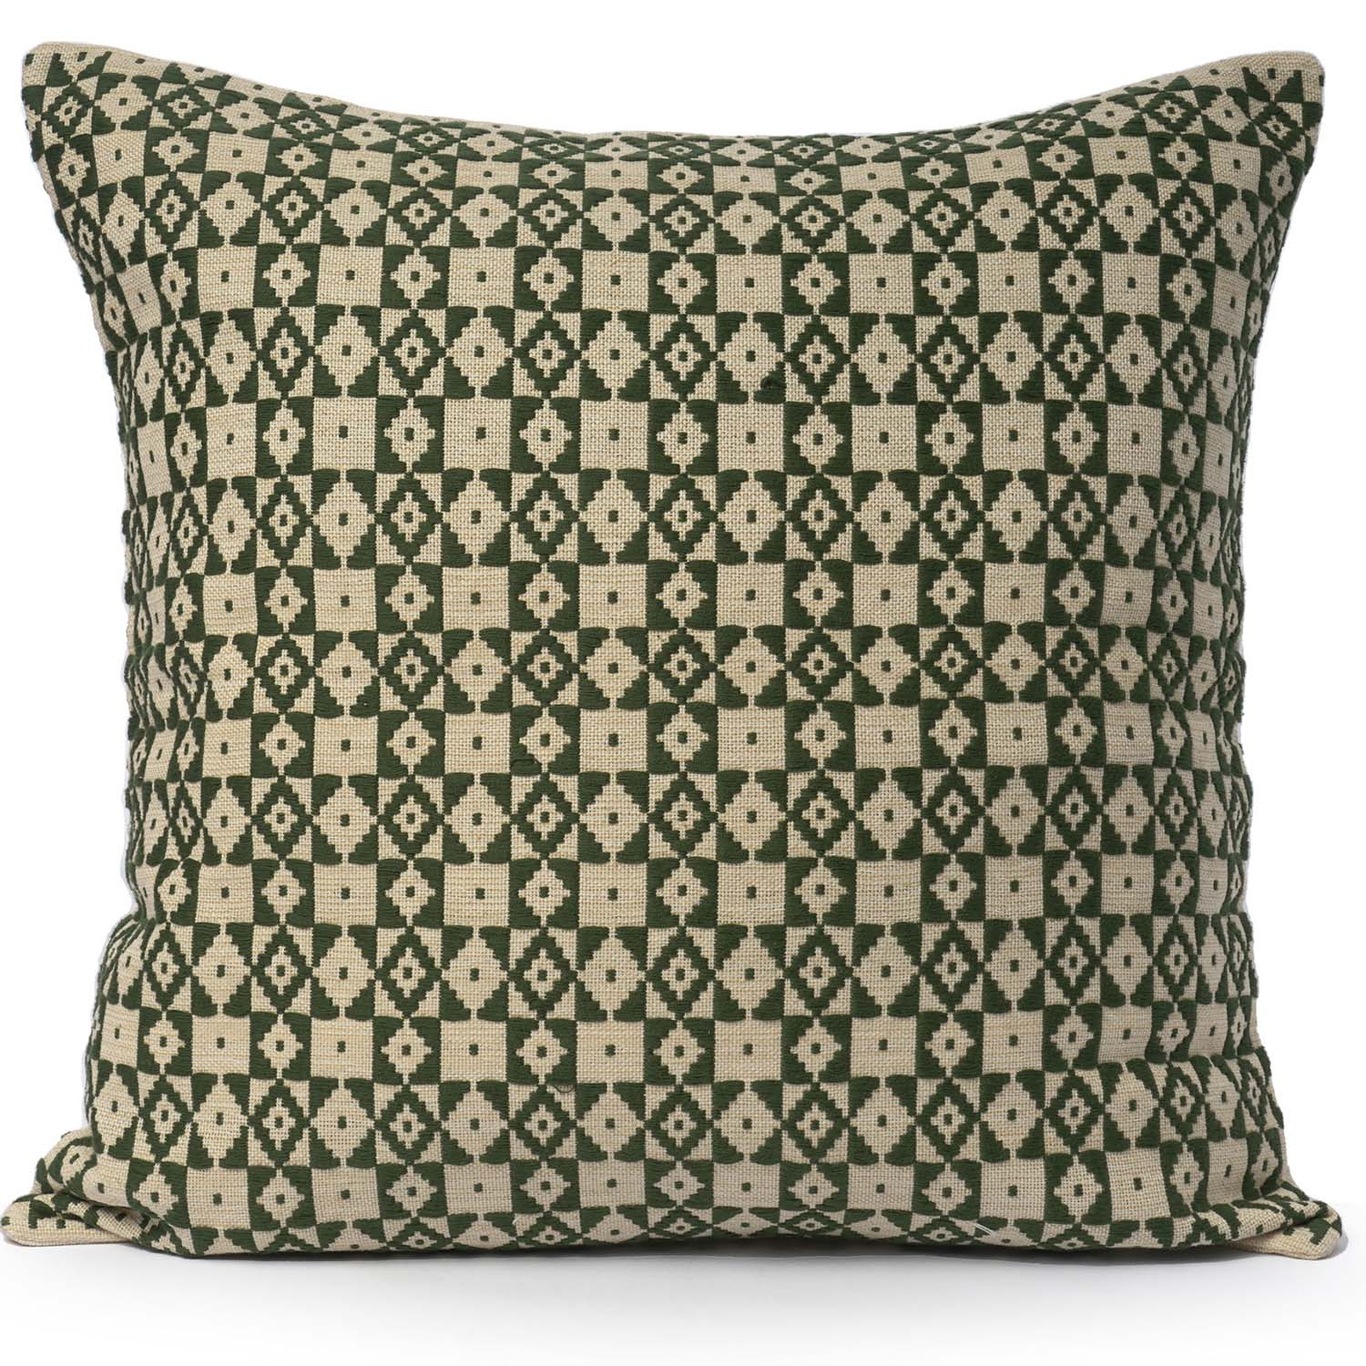 Mini Check Cushion Cover 50x50 cm, Green